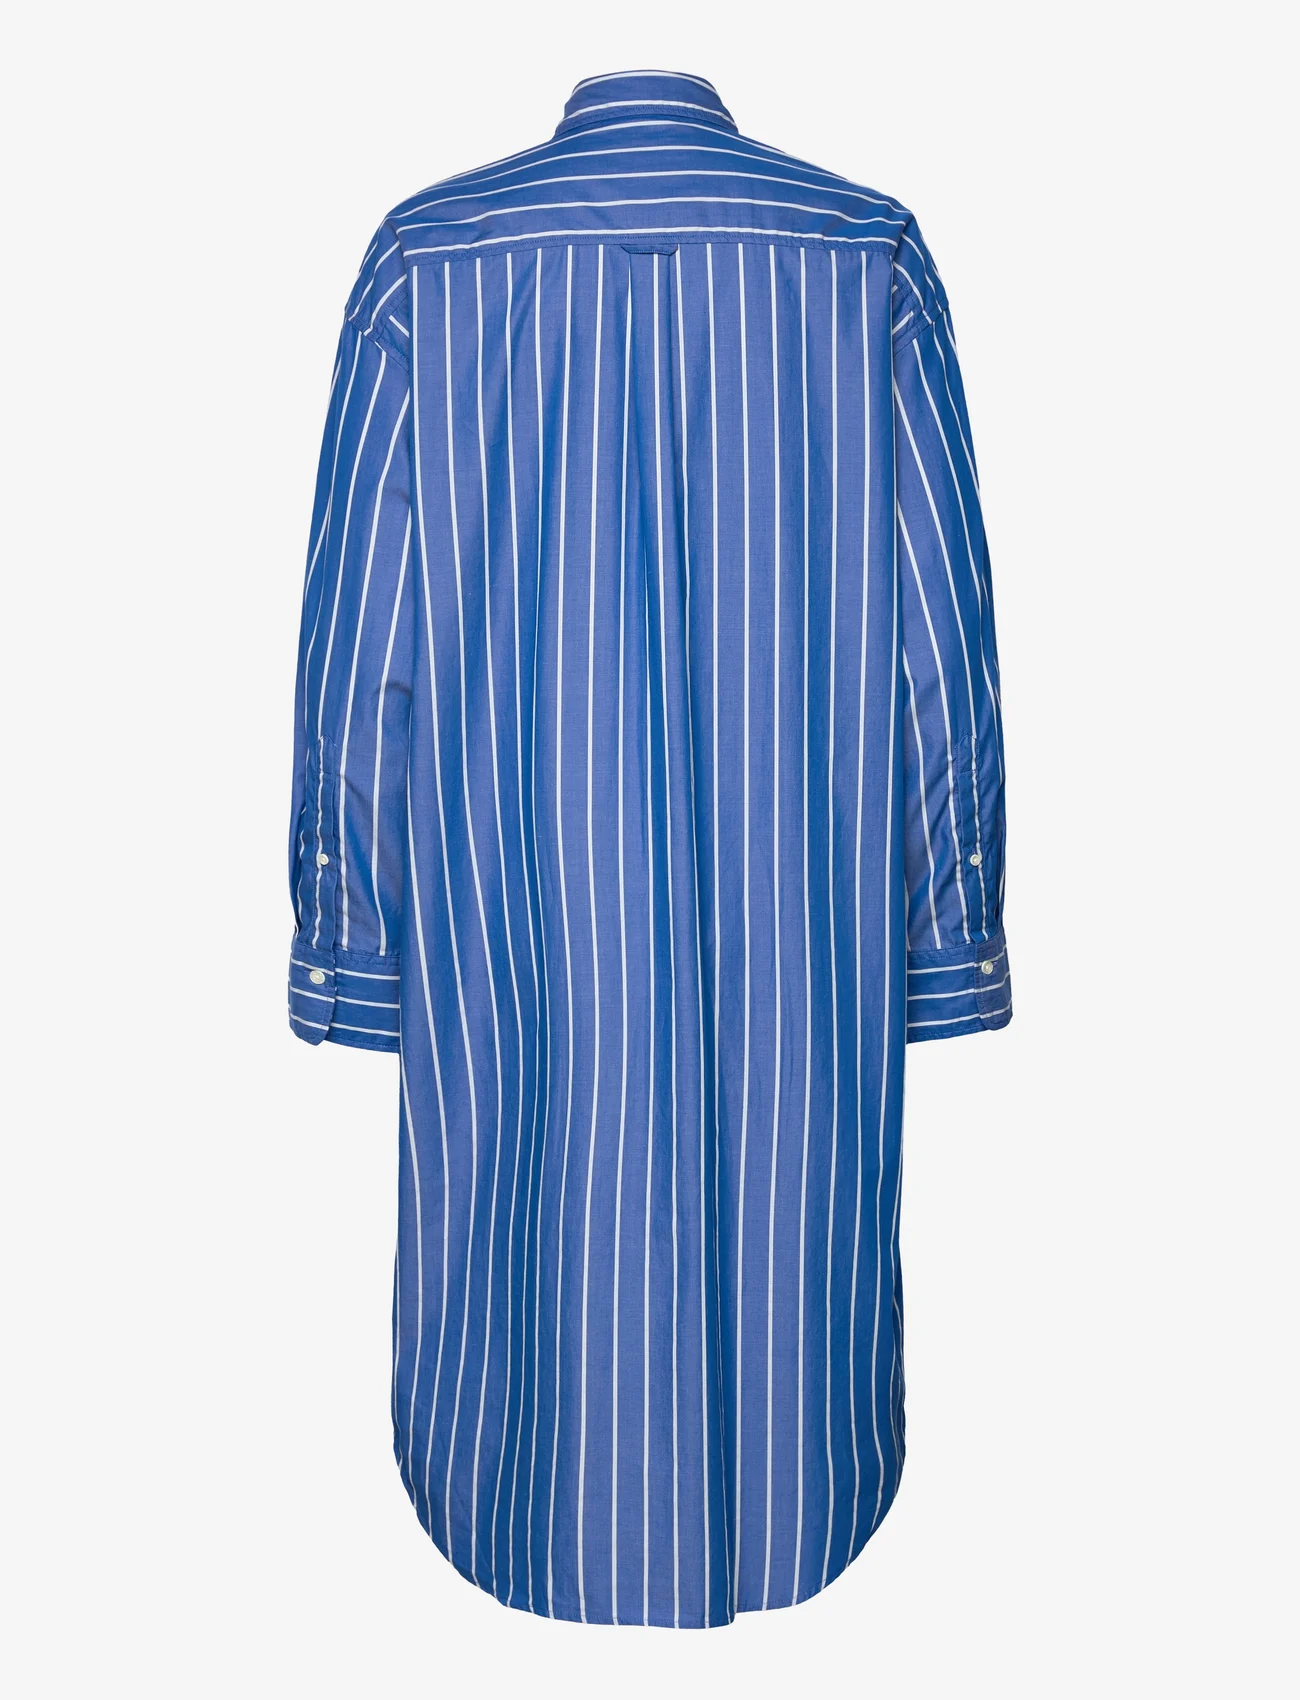 GANT - OS STRIPED SHIRT DRESS - kreklkleitas - lapis blue - 1